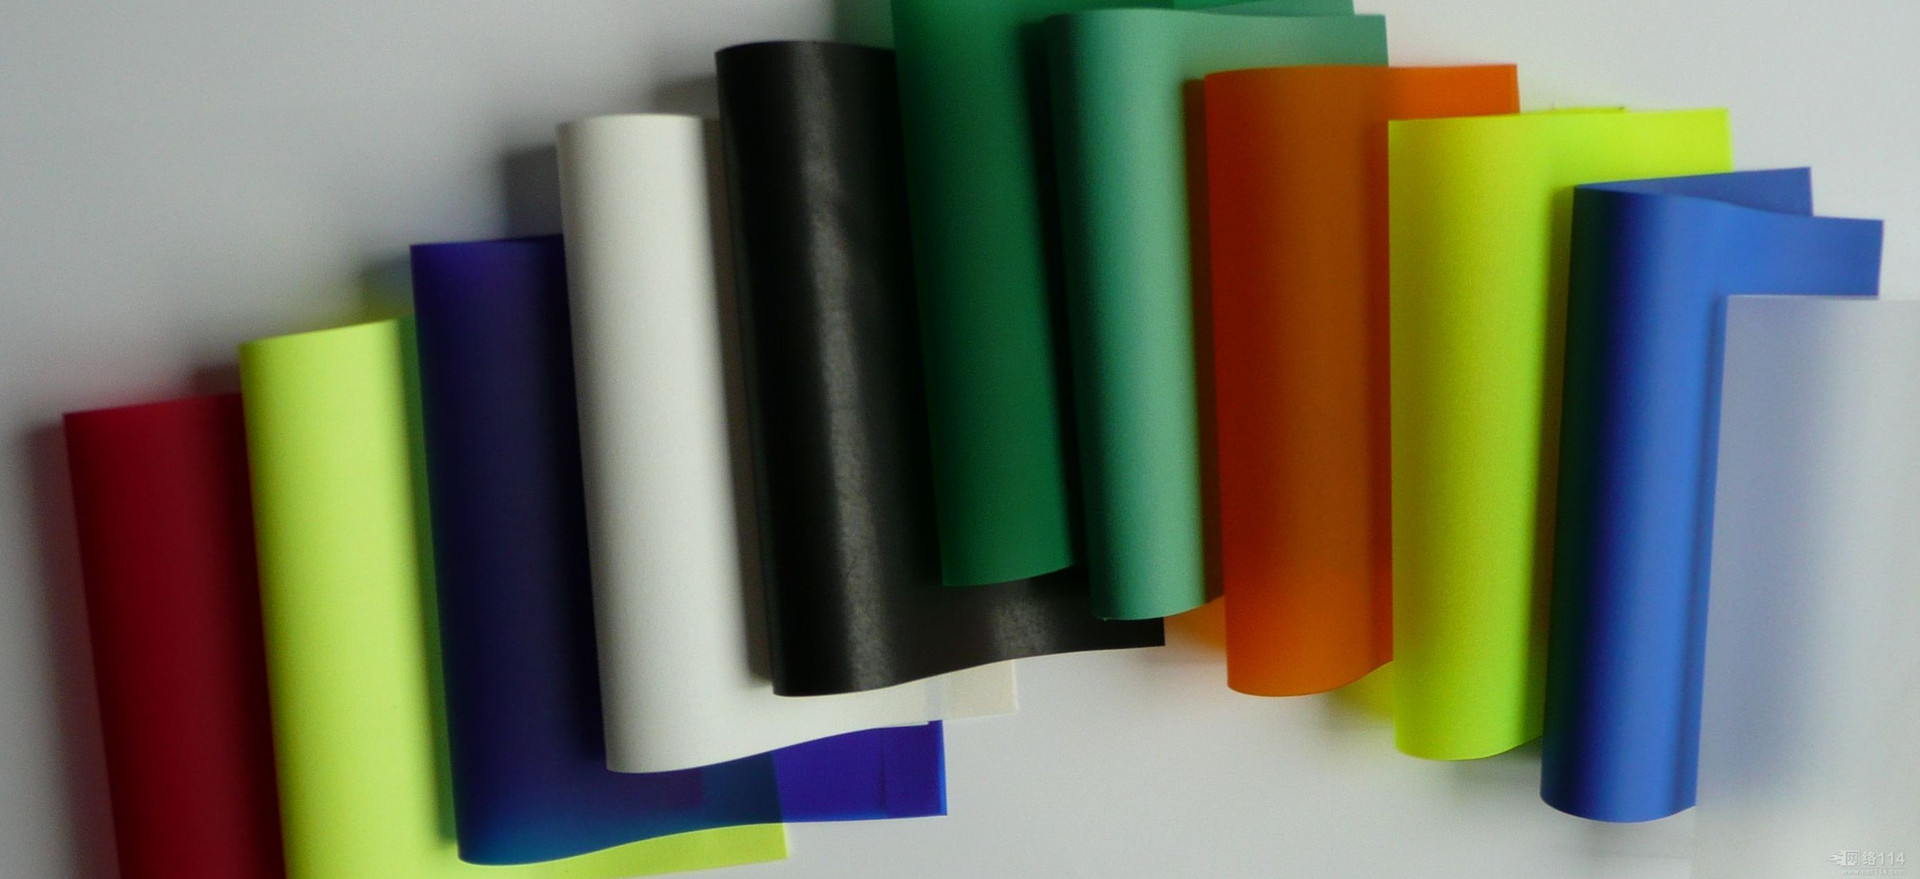 彩色胶片加工出彩色夹胶玻璃用于装修工程项目